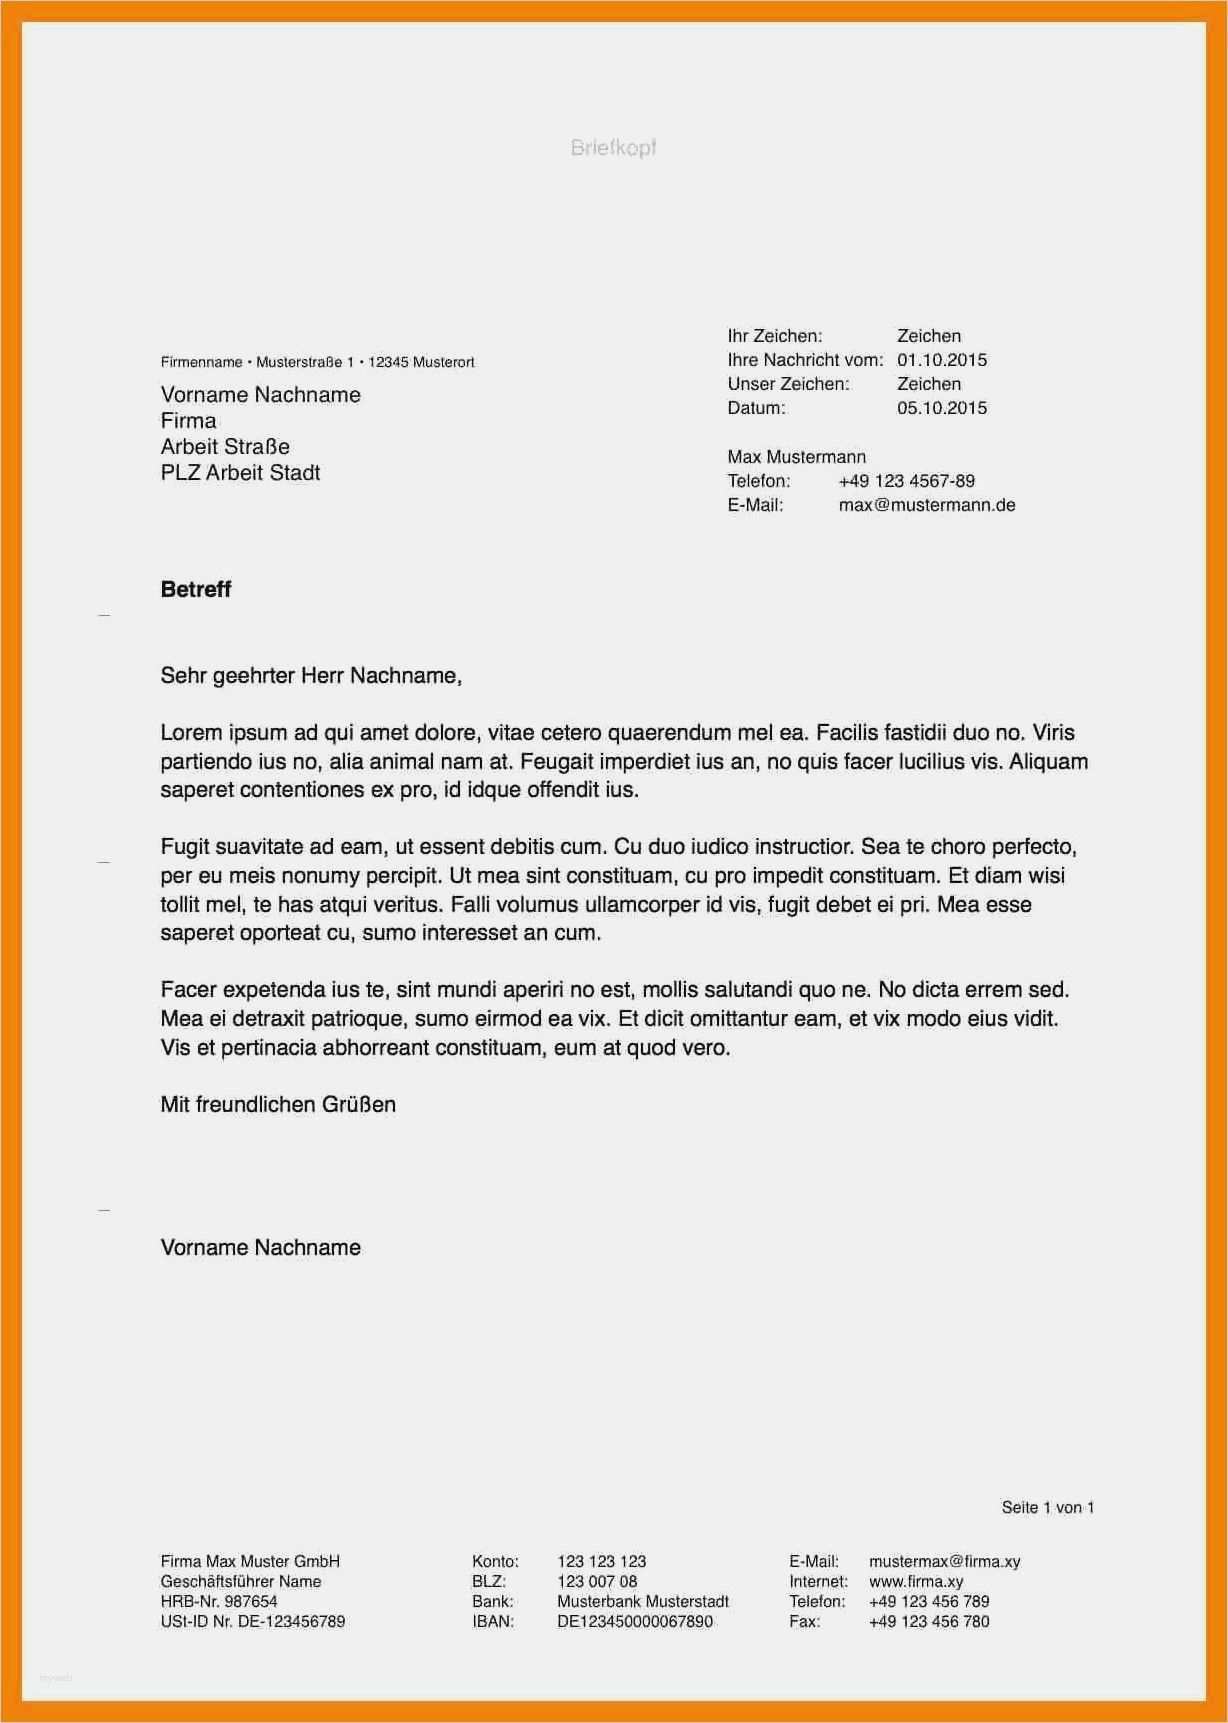 Frisch Private Briefvorlage Word Briefprobe Briefformat Briefvorlage Briefvorlagen Briefkopf Vorlage Vorlagen Word